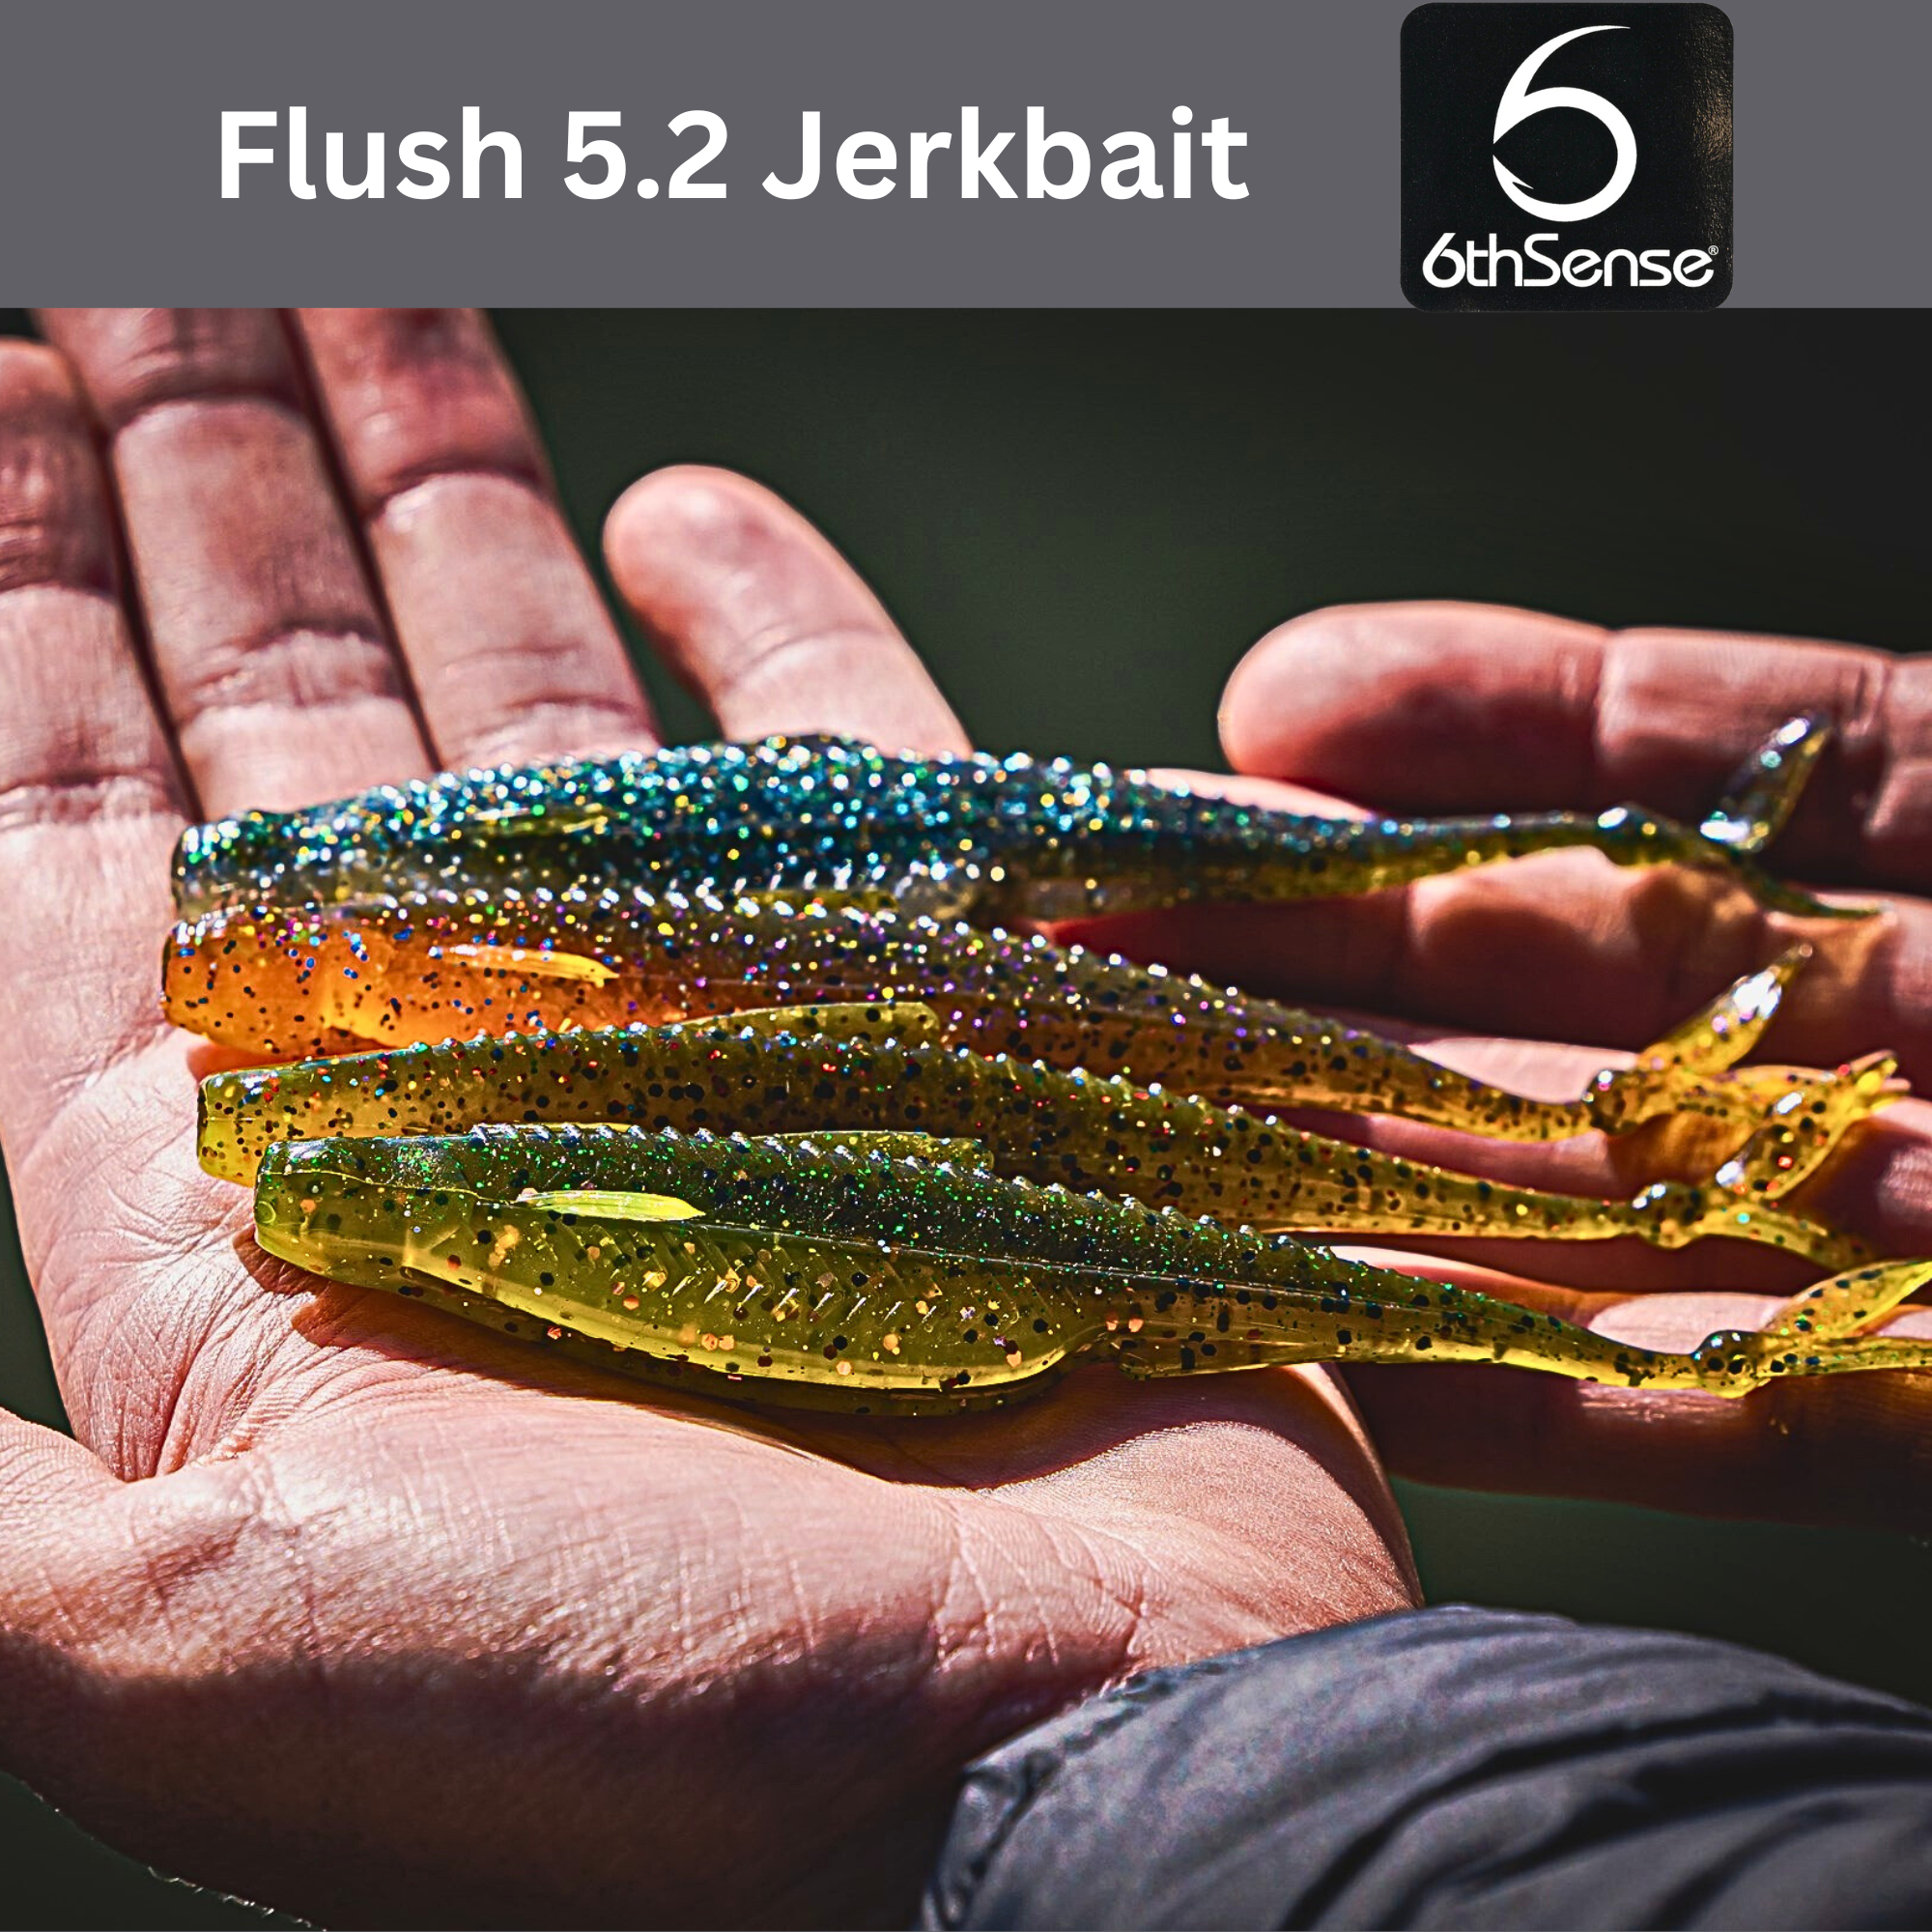 6th Sense Fishing - The new Flush soft plastic jerk bait in the